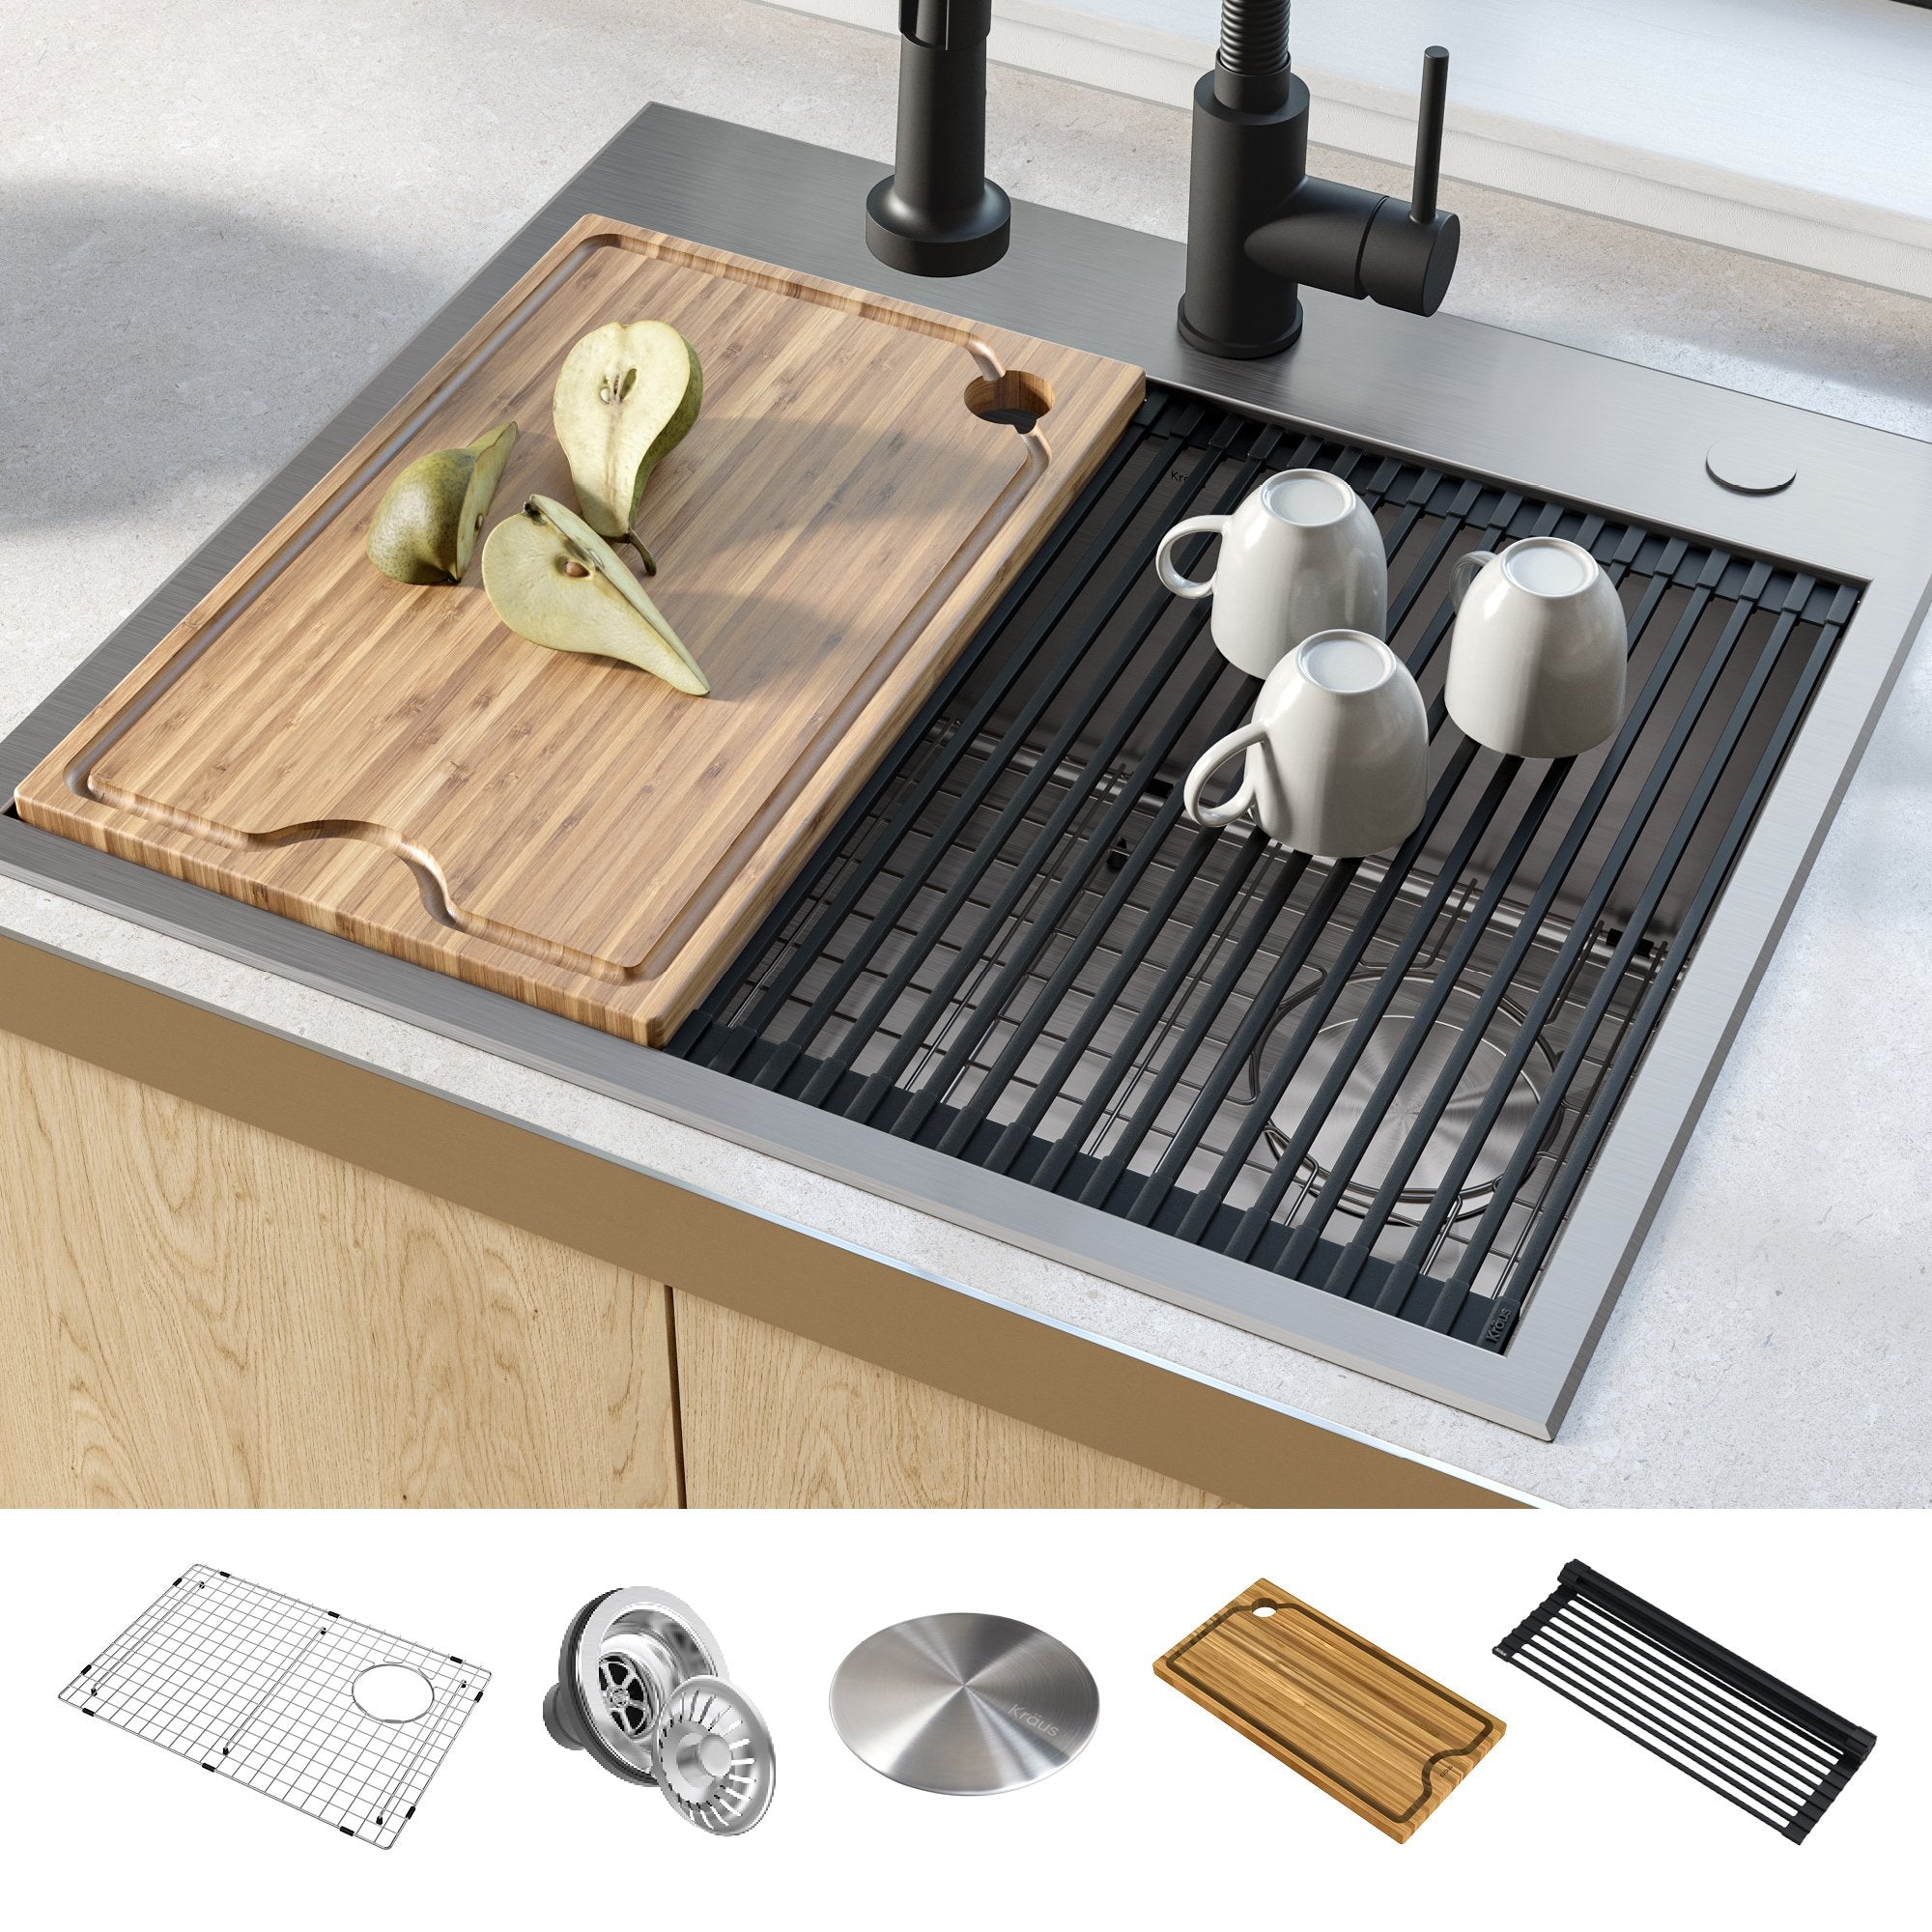 KRAUS Kore Workstation 25-inch Drop-In or Undermount 16 Gauge Single Bowl Stainless Steel Kitchen Sink with Accessories-Kitchen Sinks-KRAUS